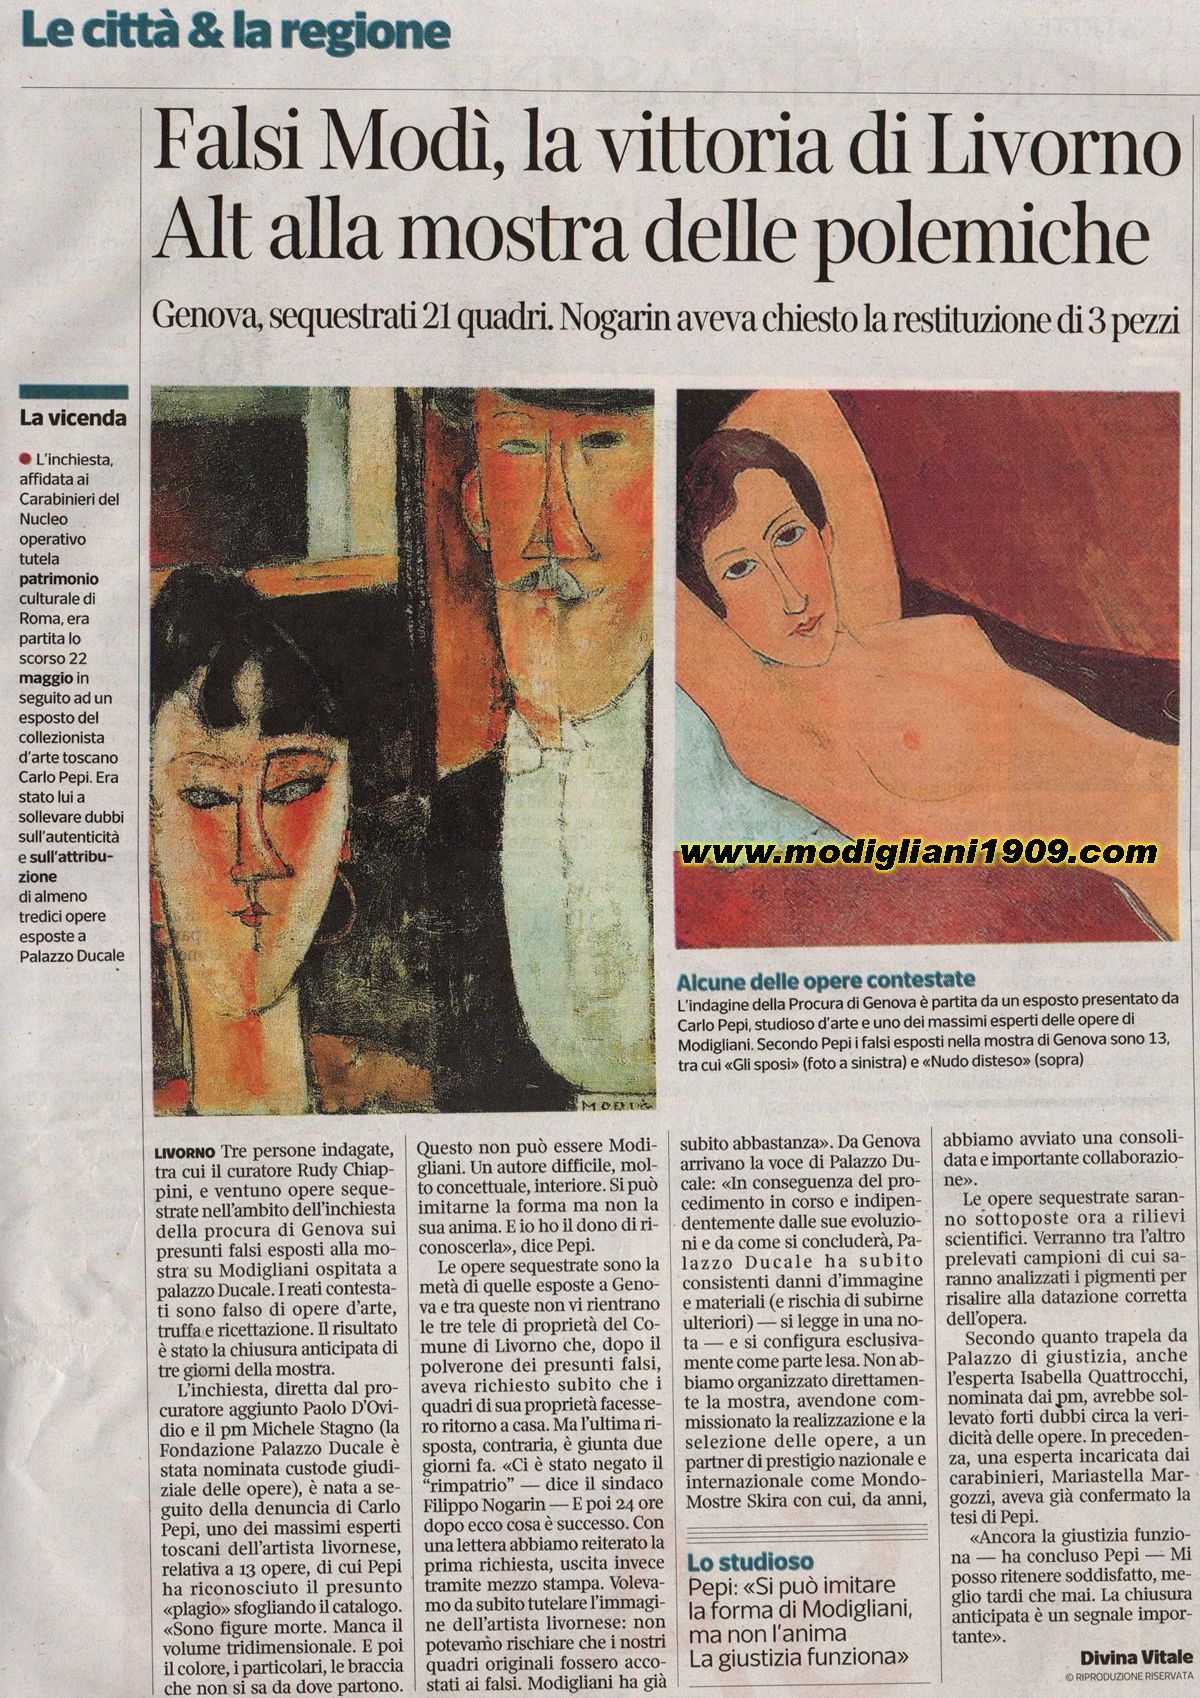 Fakes Modì, the victory of Livorno - Genoa, seized 21 works - Il Corriere Fiorentino